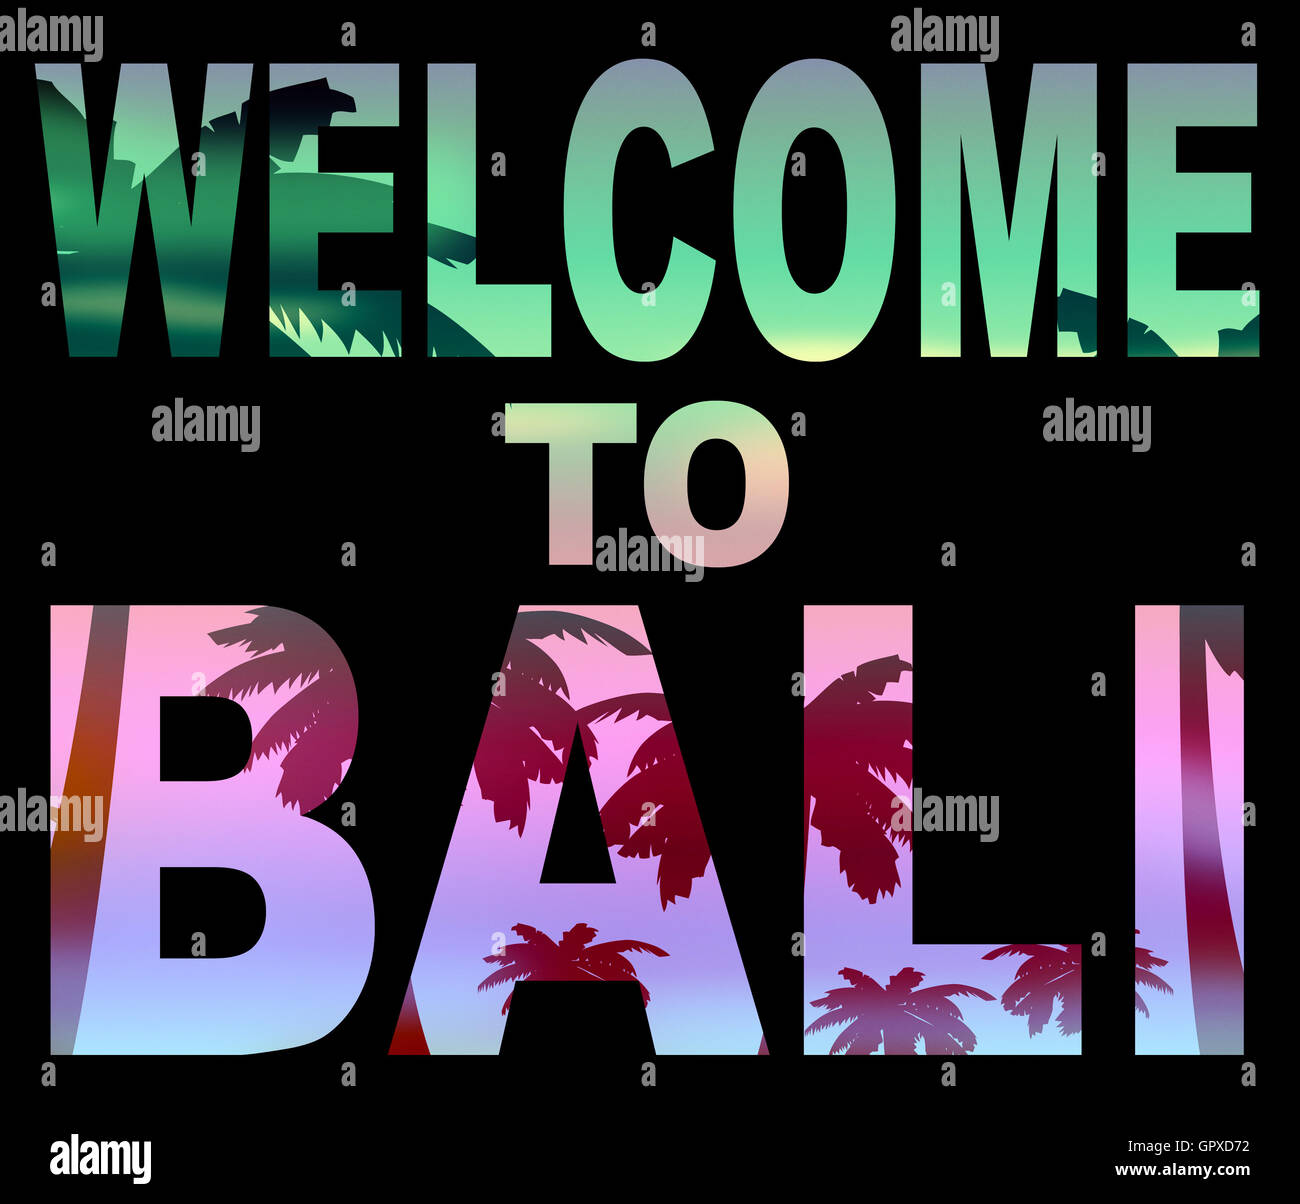 Willkommen auf Bali zeigt Urlaubsgrüße und Einladung Stockfoto